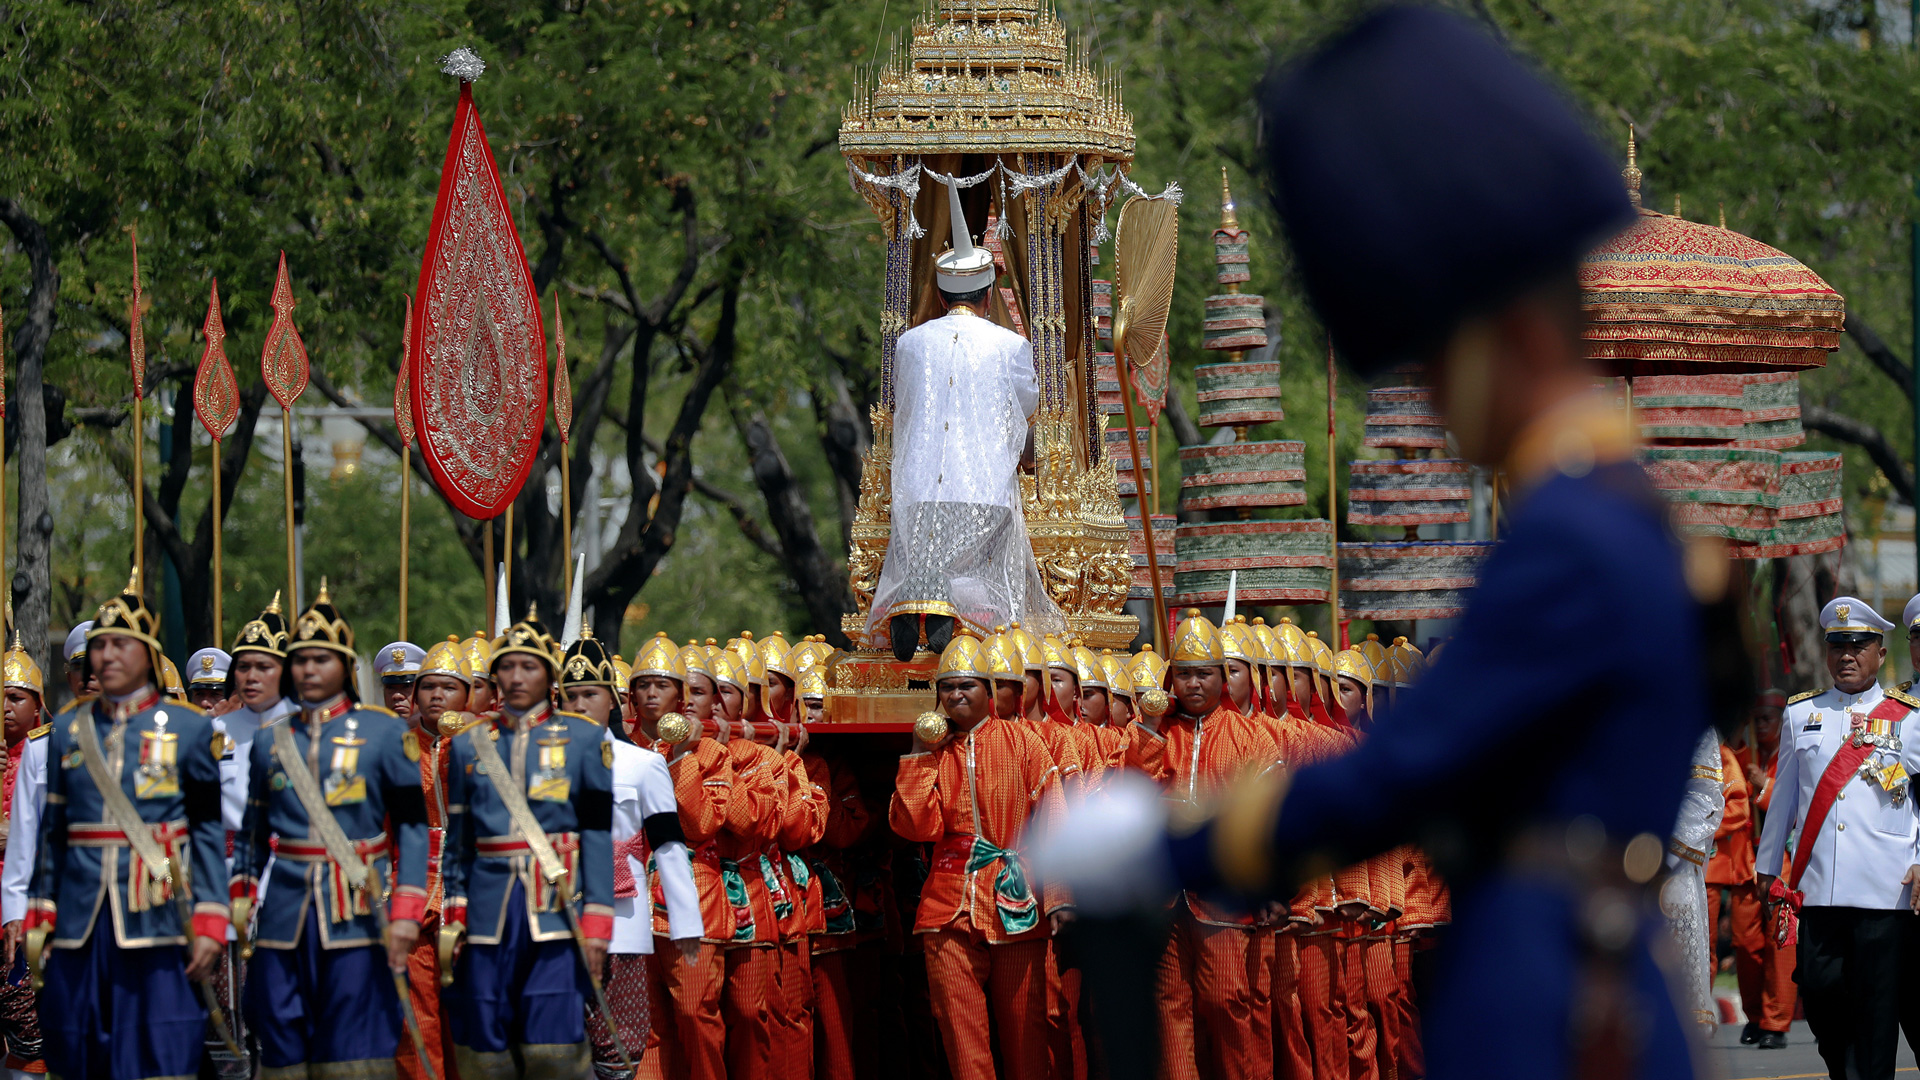 Tailandia despide a su rey en un imponente funeral que ha costado más de 76 millones de euros